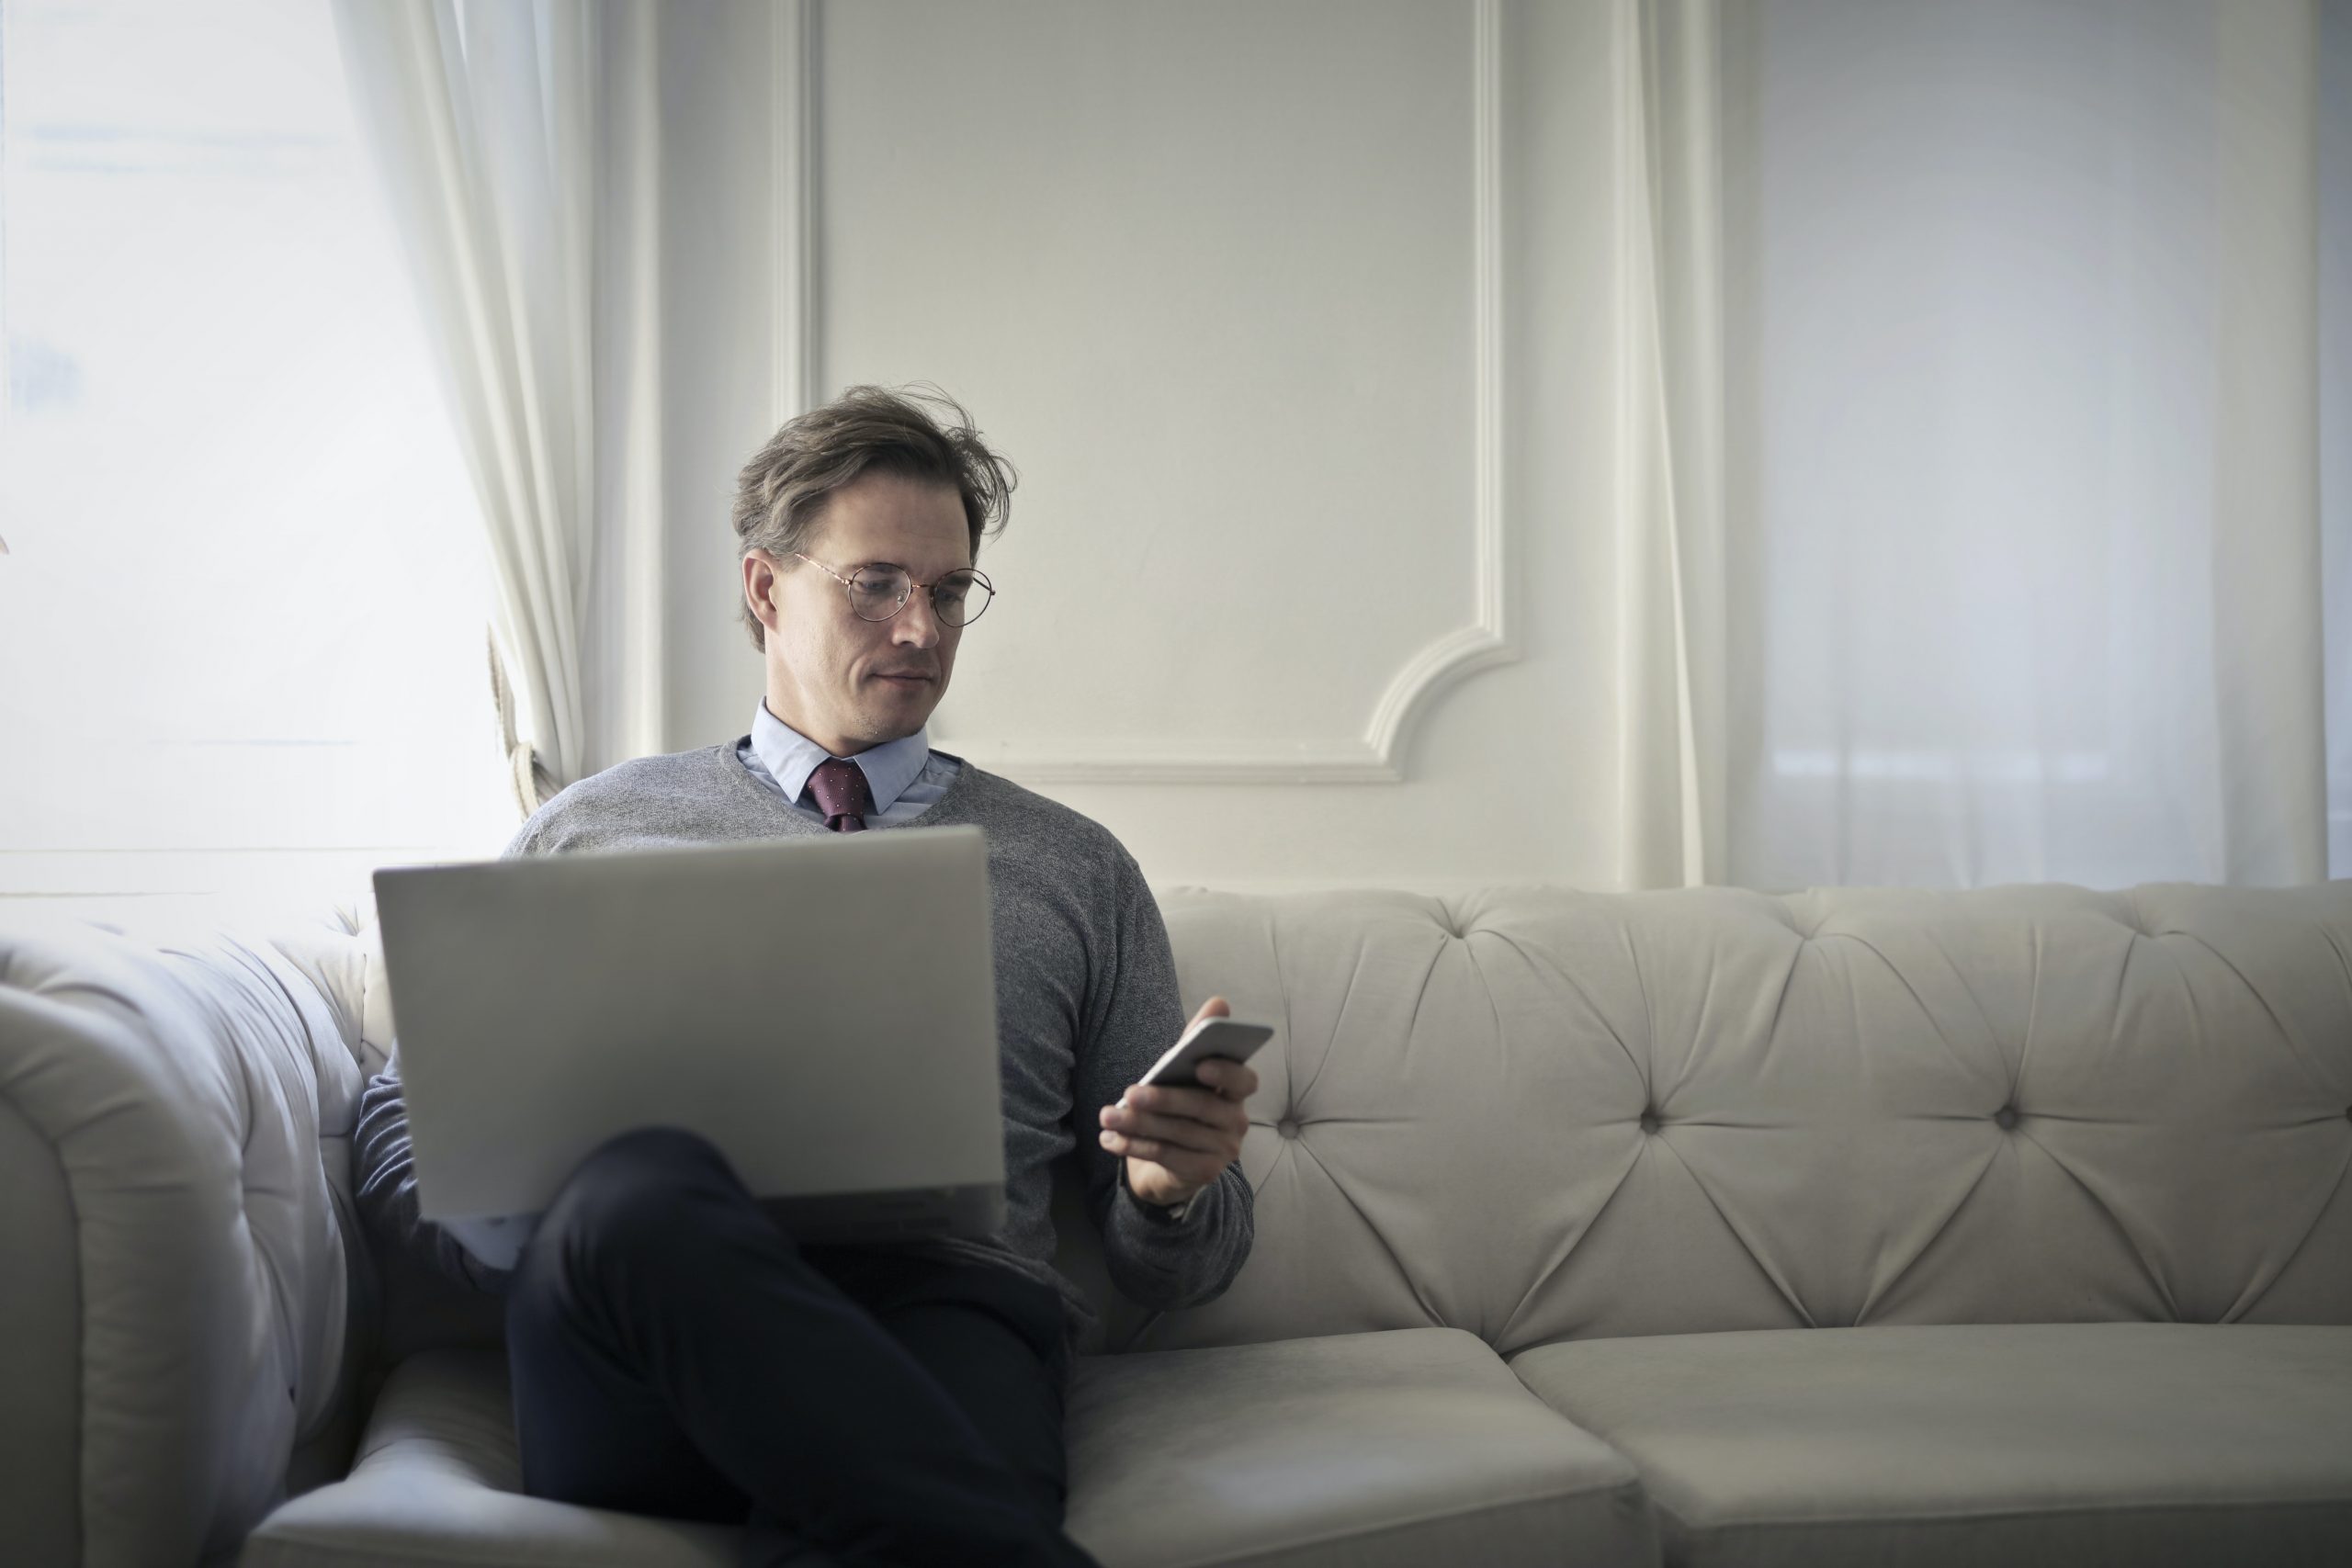 Nachdenklicher Geschäftsmann im eleganten Anzug sitzt auf einem Sofa, betrachtet ein Smartphone und arbeitet an einem Laptop, möglicherweise um Versicherungsoptionen online zu vergleichen oder eine Versicherungspolice zu verwalten, in einem hellen, stilvollen Raum.